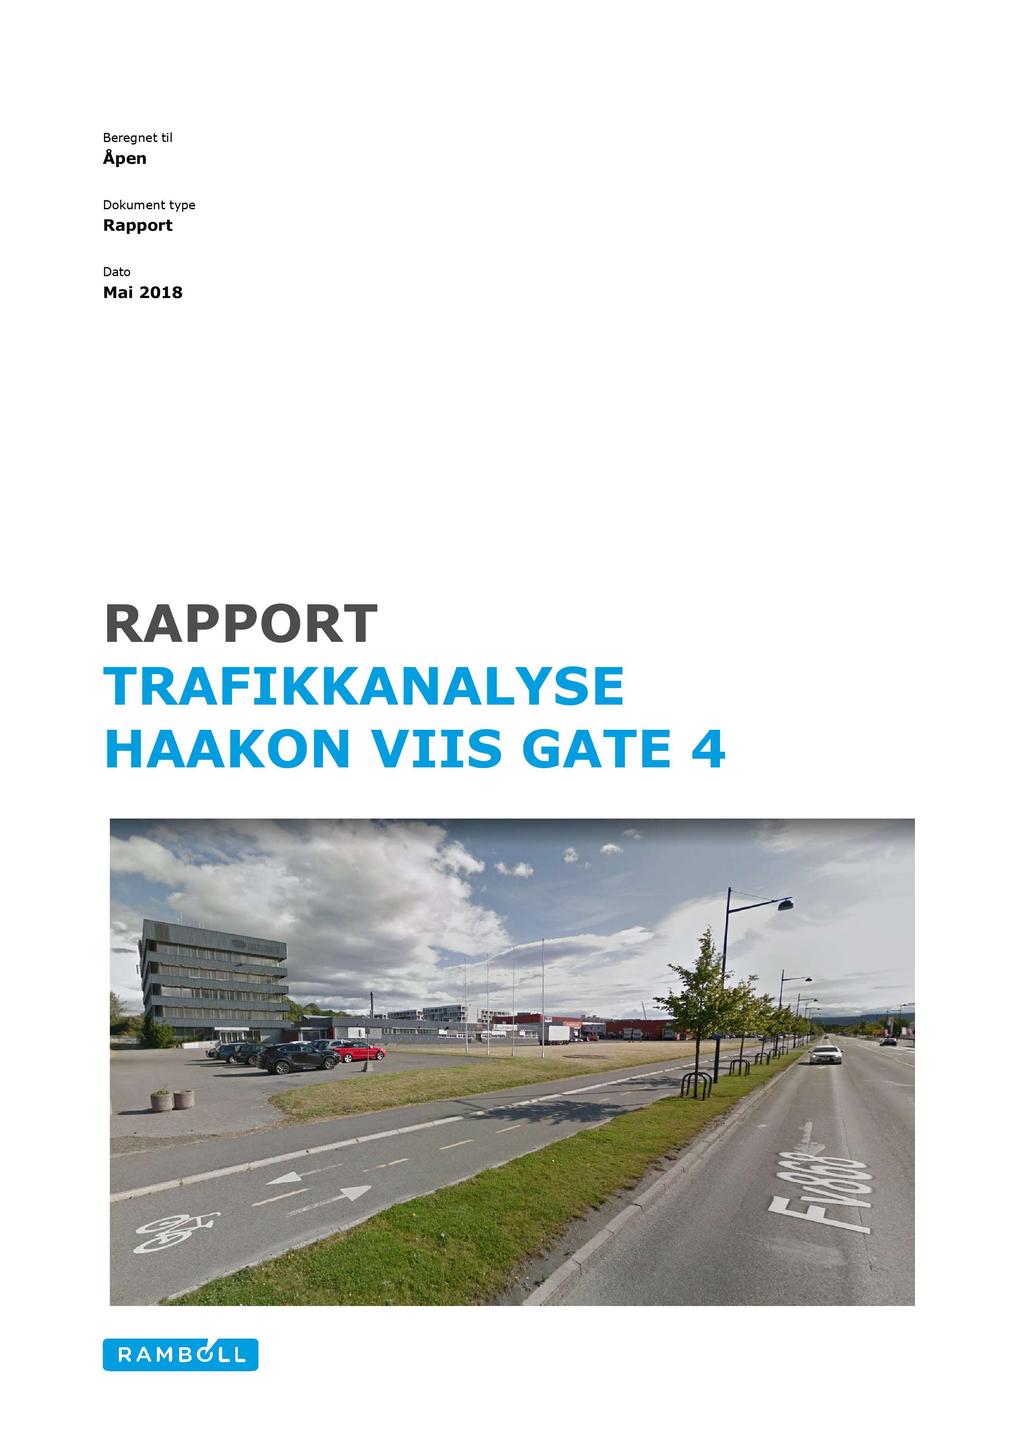 Beregnet til Åpen Dokument type Rapport Dato Mai 2018 R